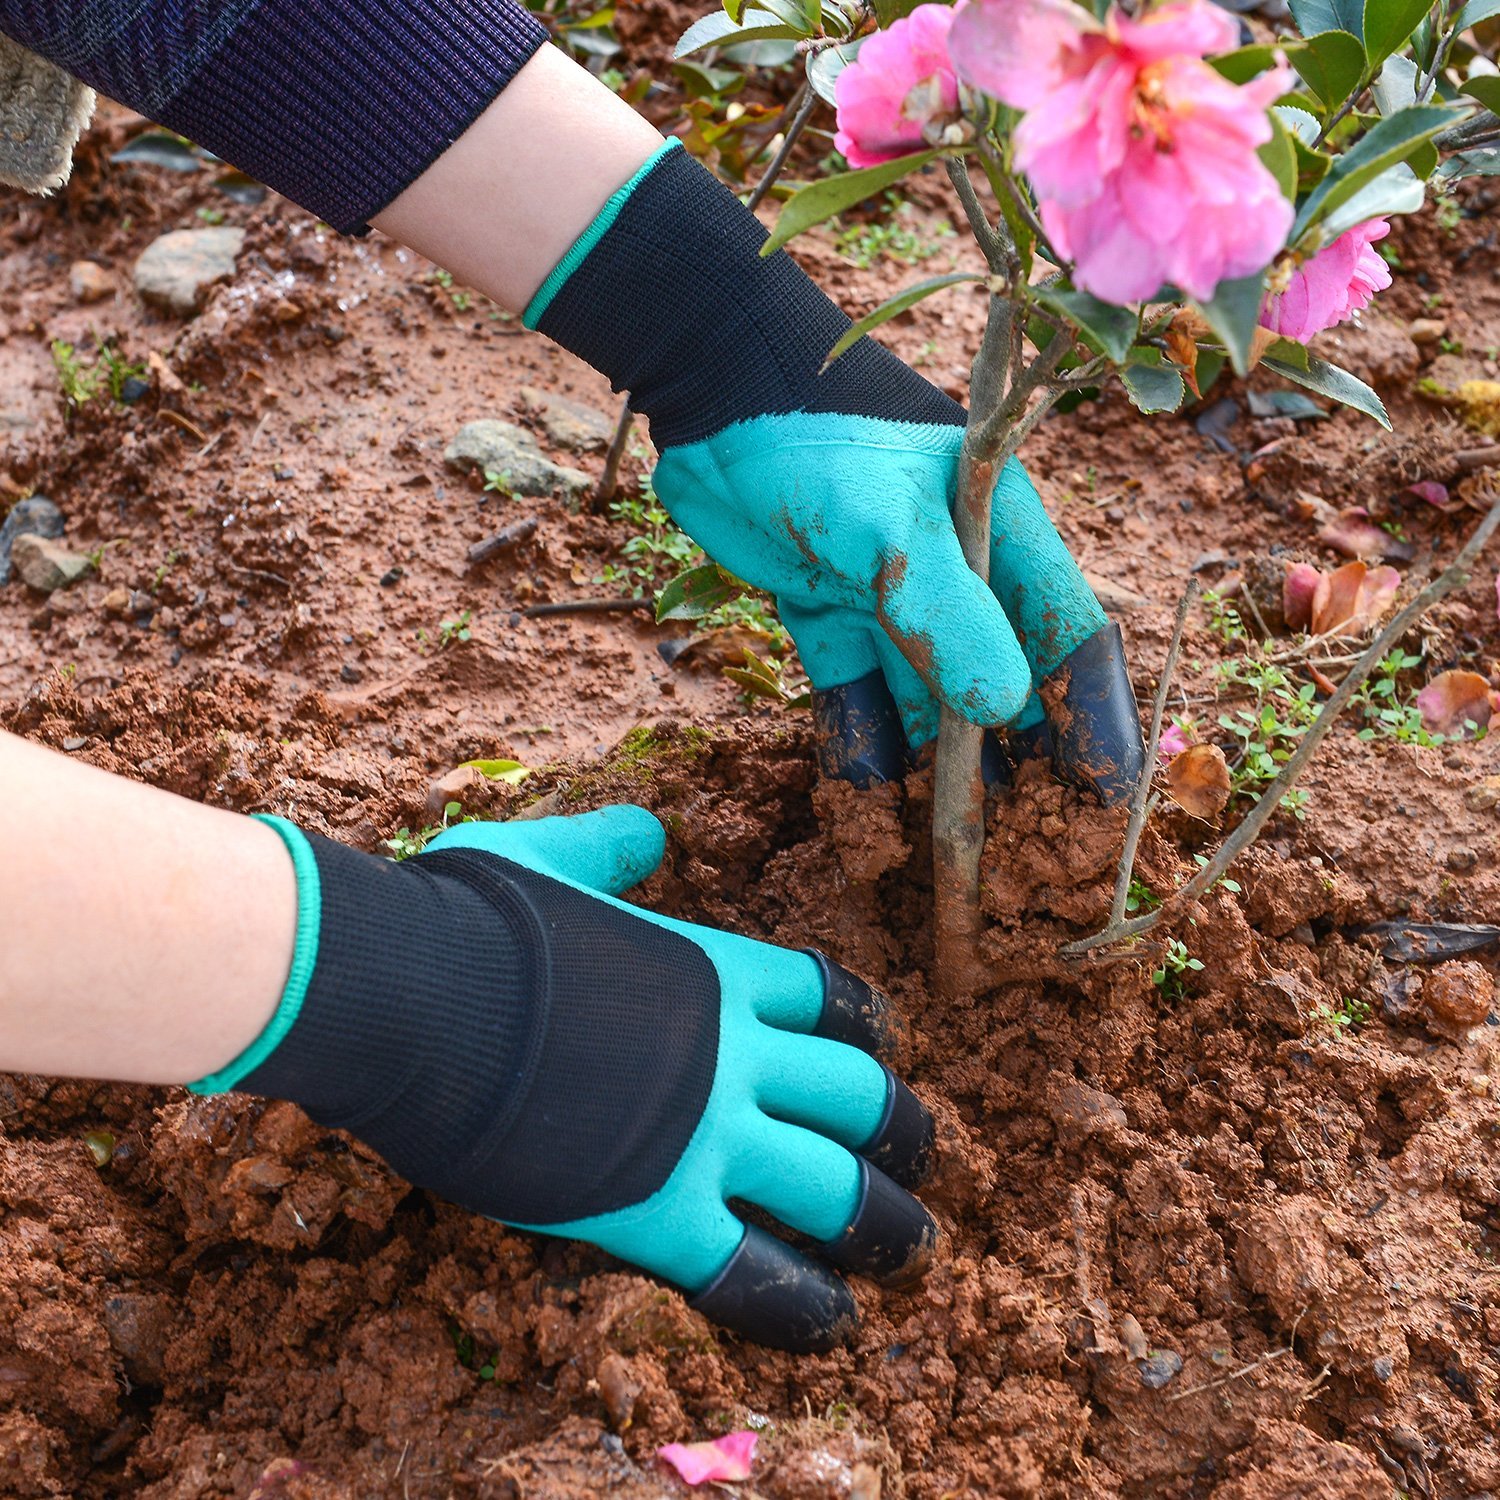 Găng tay làm vườn chuyên dụng ( Bới đất, chăm cây )